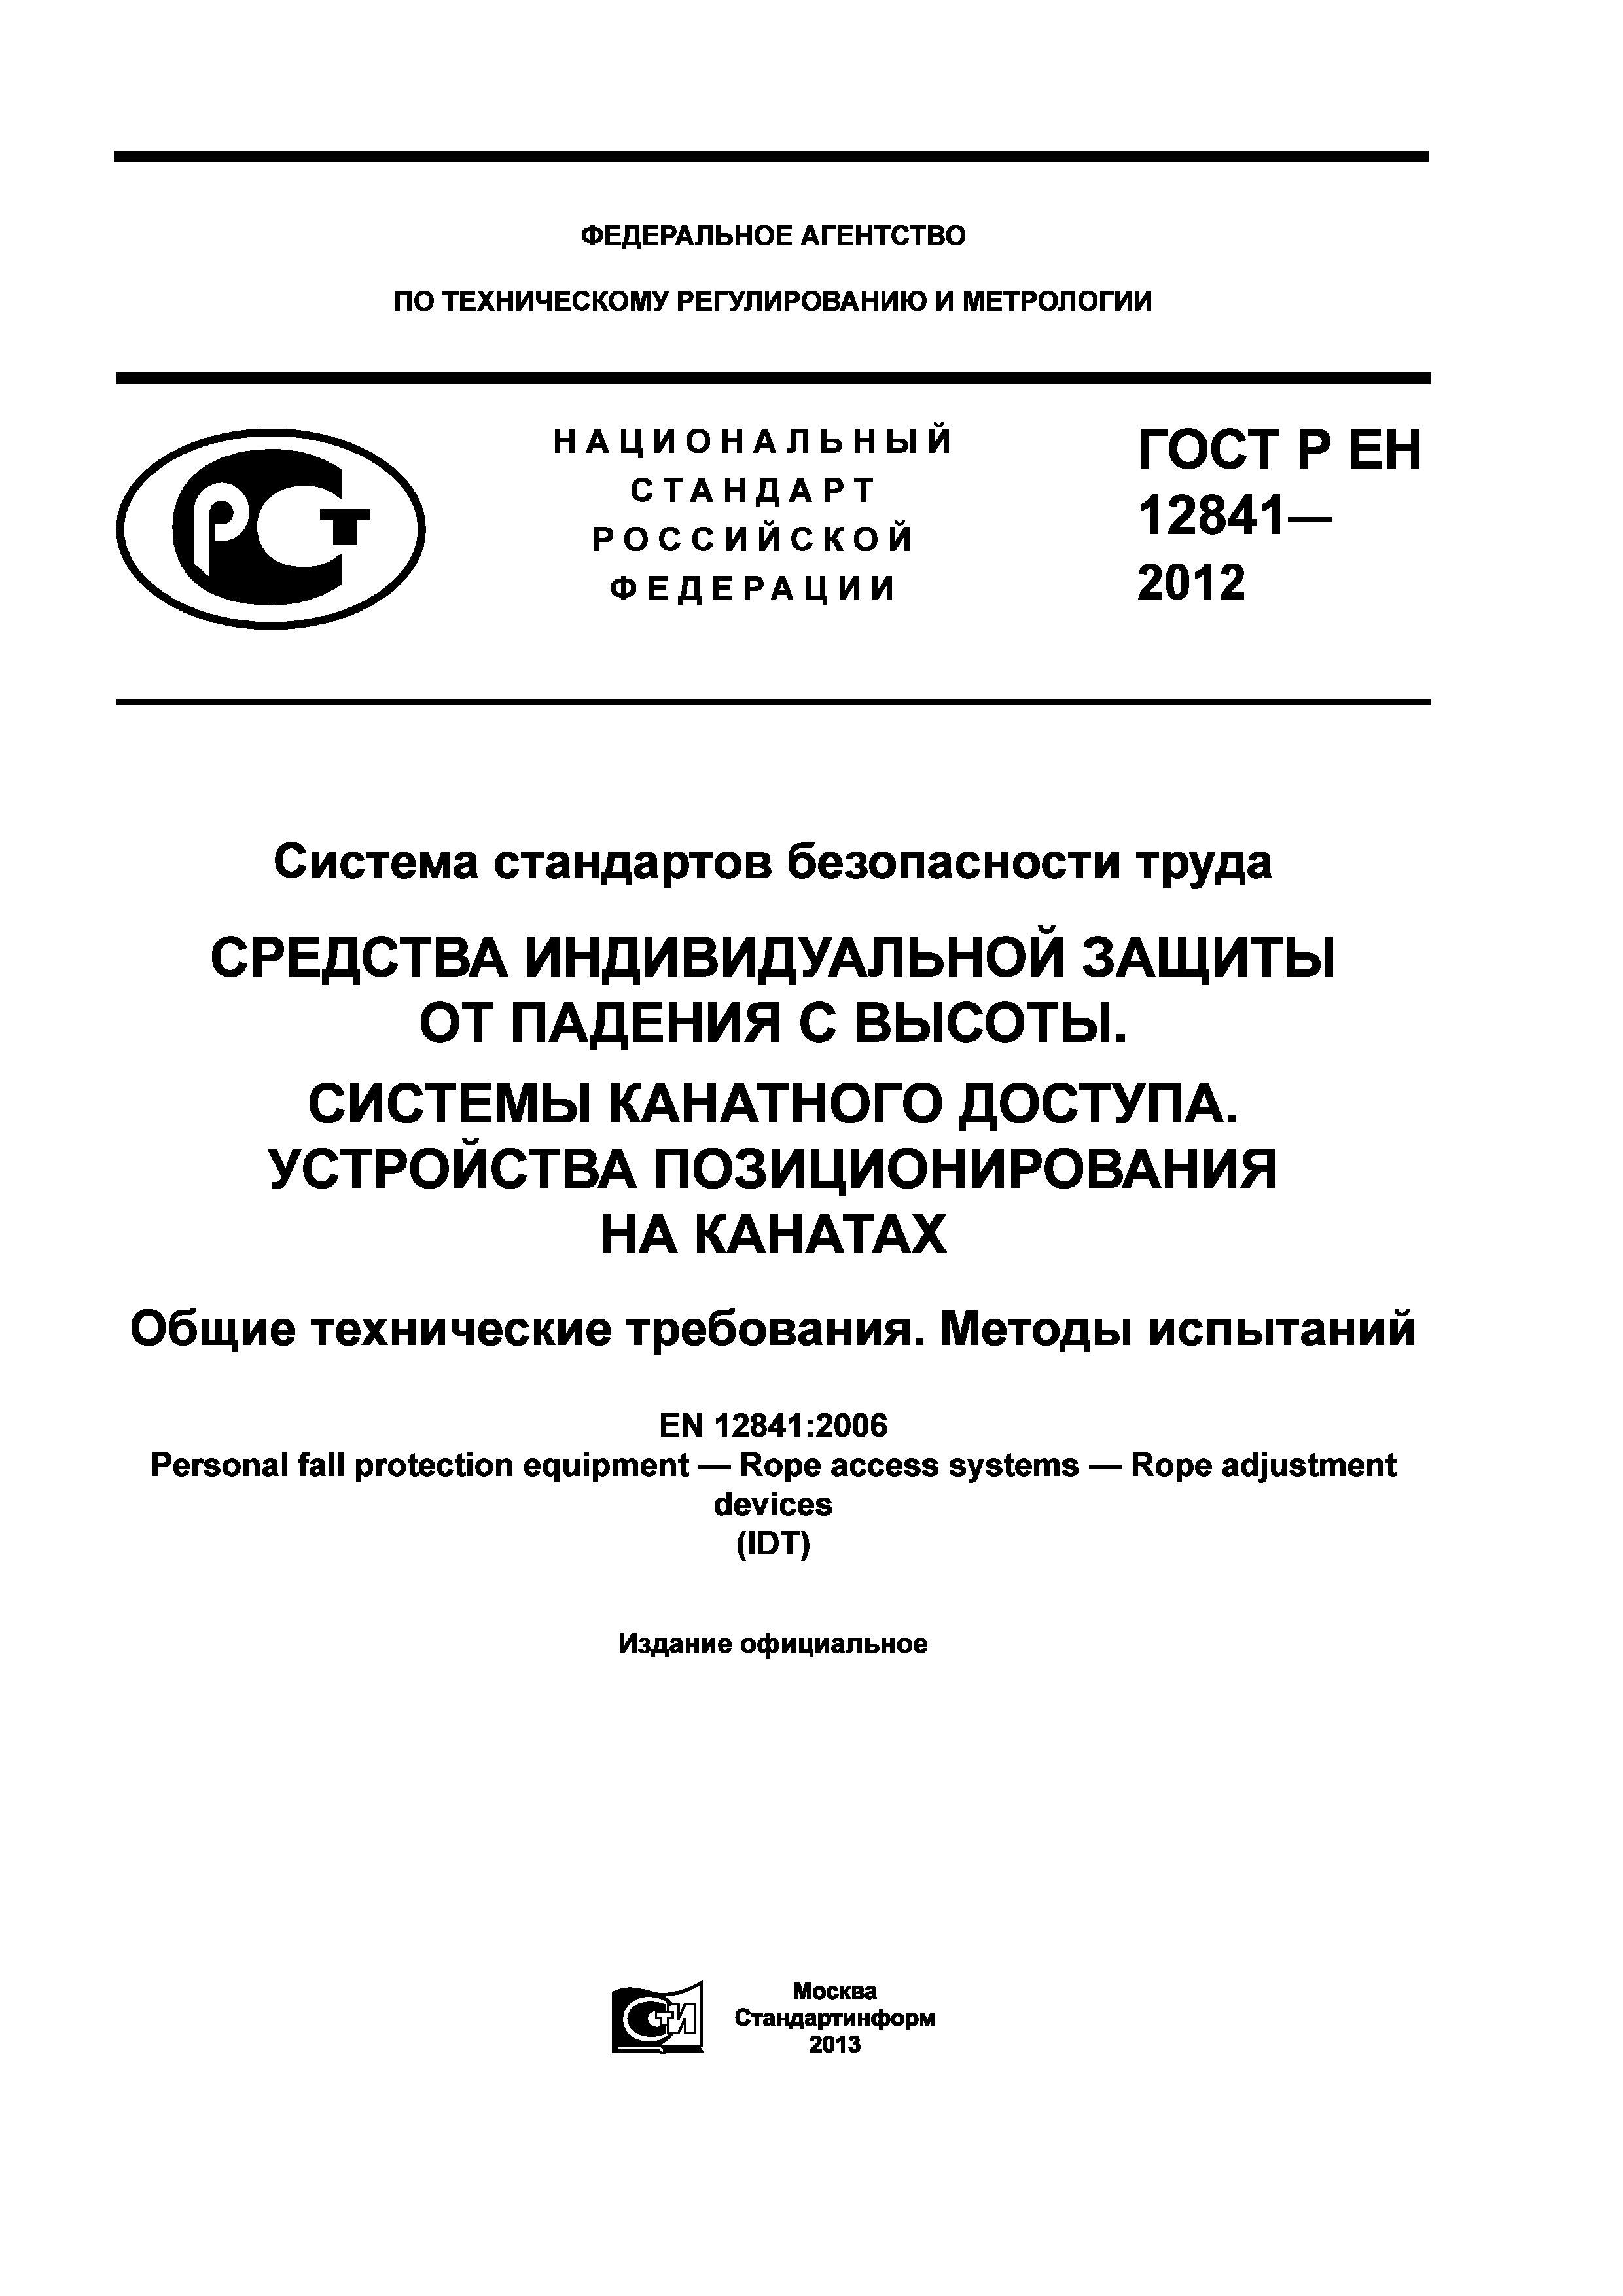 ГОСТ Р ЕН 12841-2012